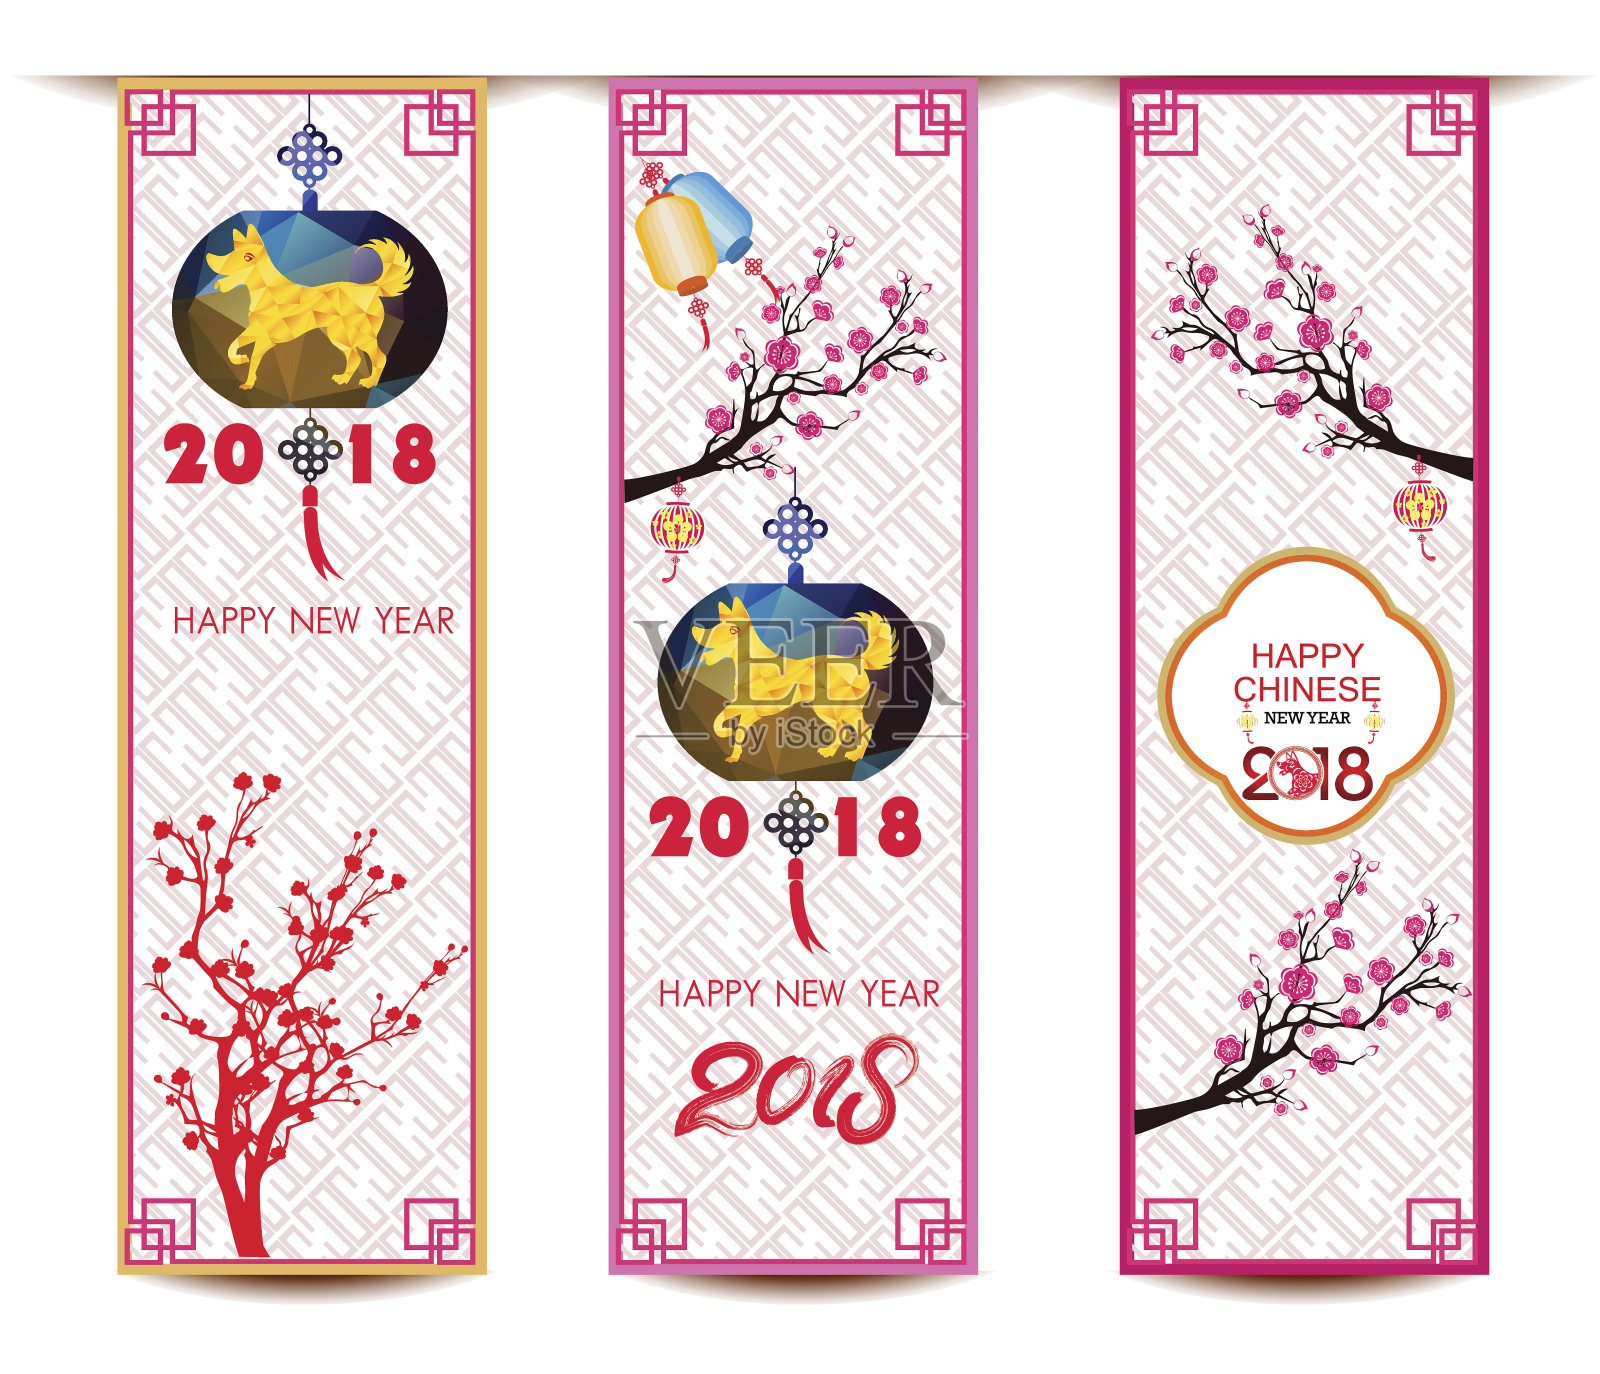 悬挂的横幅上有中国新年的狗，樱花，灯笼设计模板素材